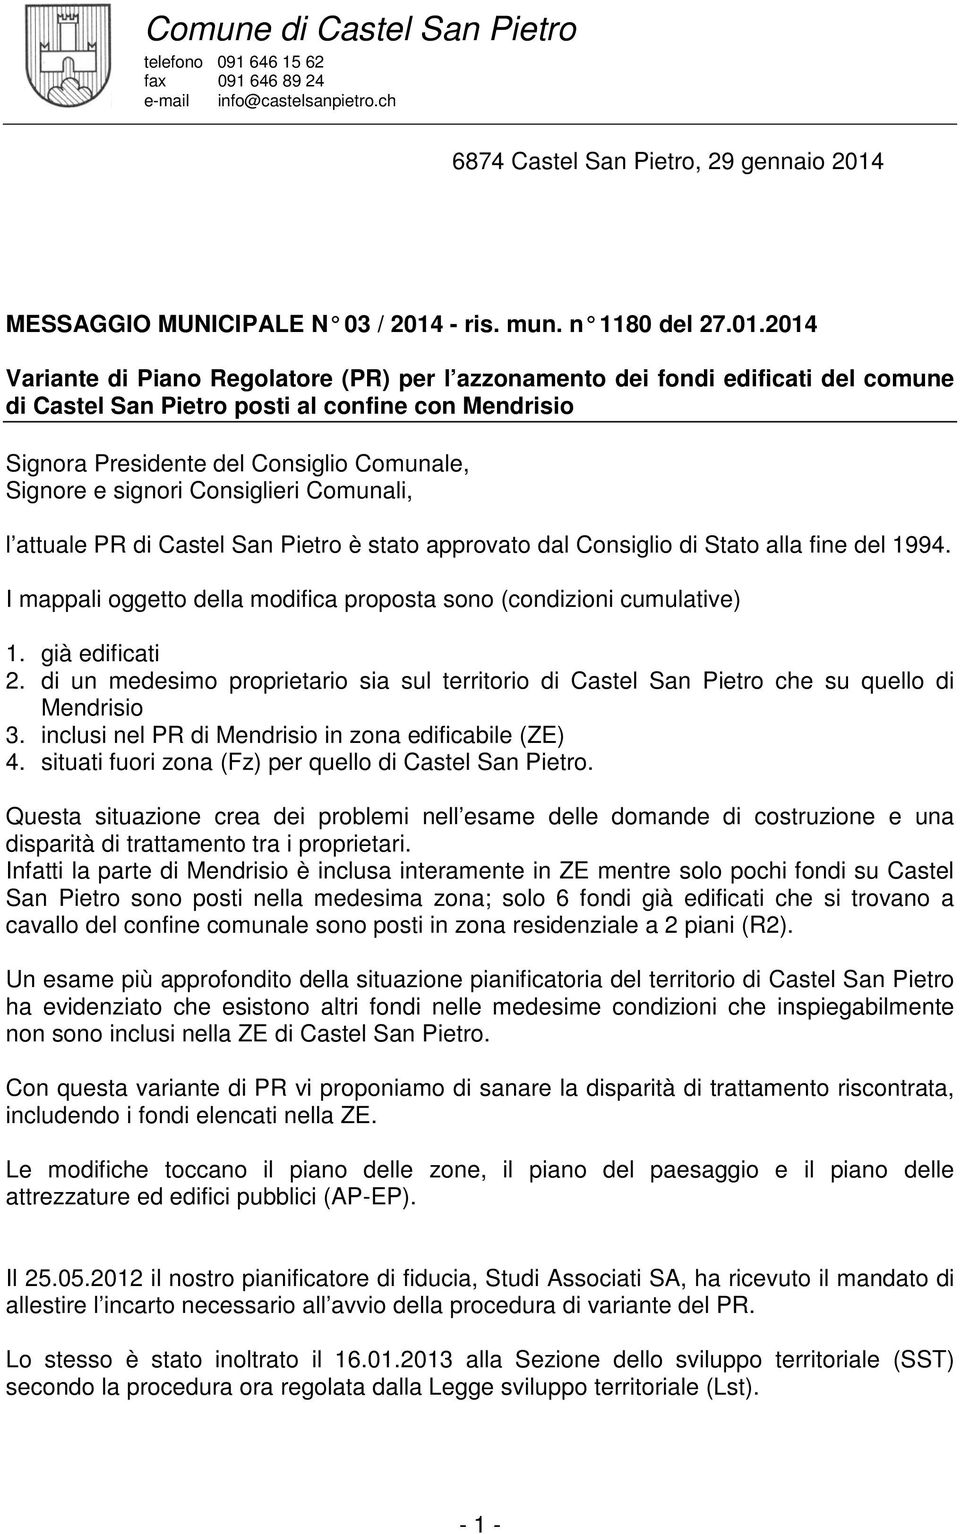 signori Consiglieri Comunali, l attuale PR di Castel San Pietro è stato approvato dal Consiglio di Stato alla fine del 1994. I mappali oggetto della modifica proposta sono (condizioni cumulative) 1.